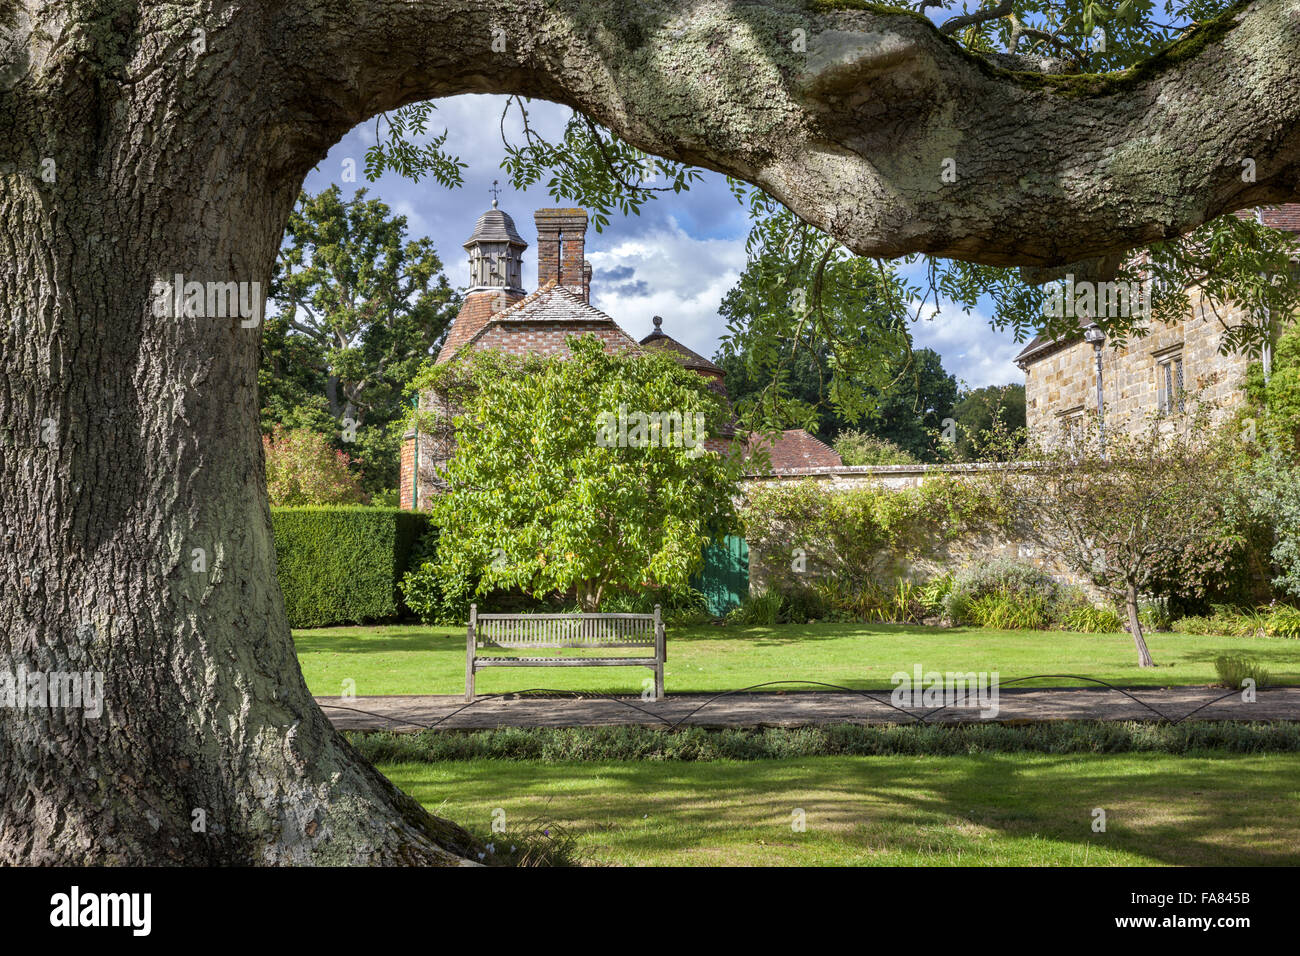 Der Garten mit dem Oast House im Hintergrund, Bateman, East Sussex. Batemans war die Heimat des Schriftstellers Rudyard Kipling von 1902 bis 1936. Stockfoto